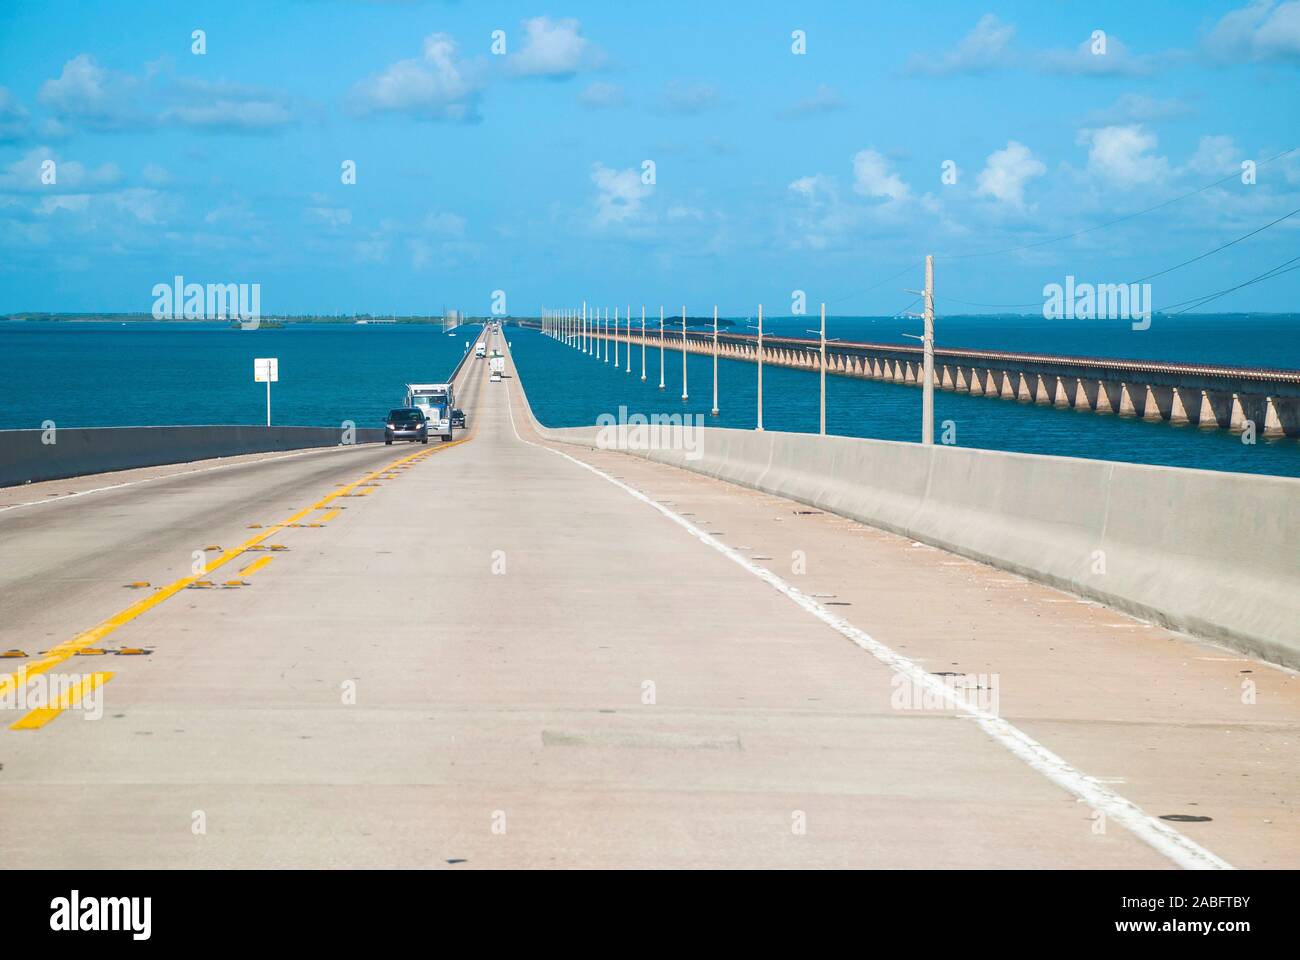 Seven Mile Bridge, Florida Keys, USA Stockfoto